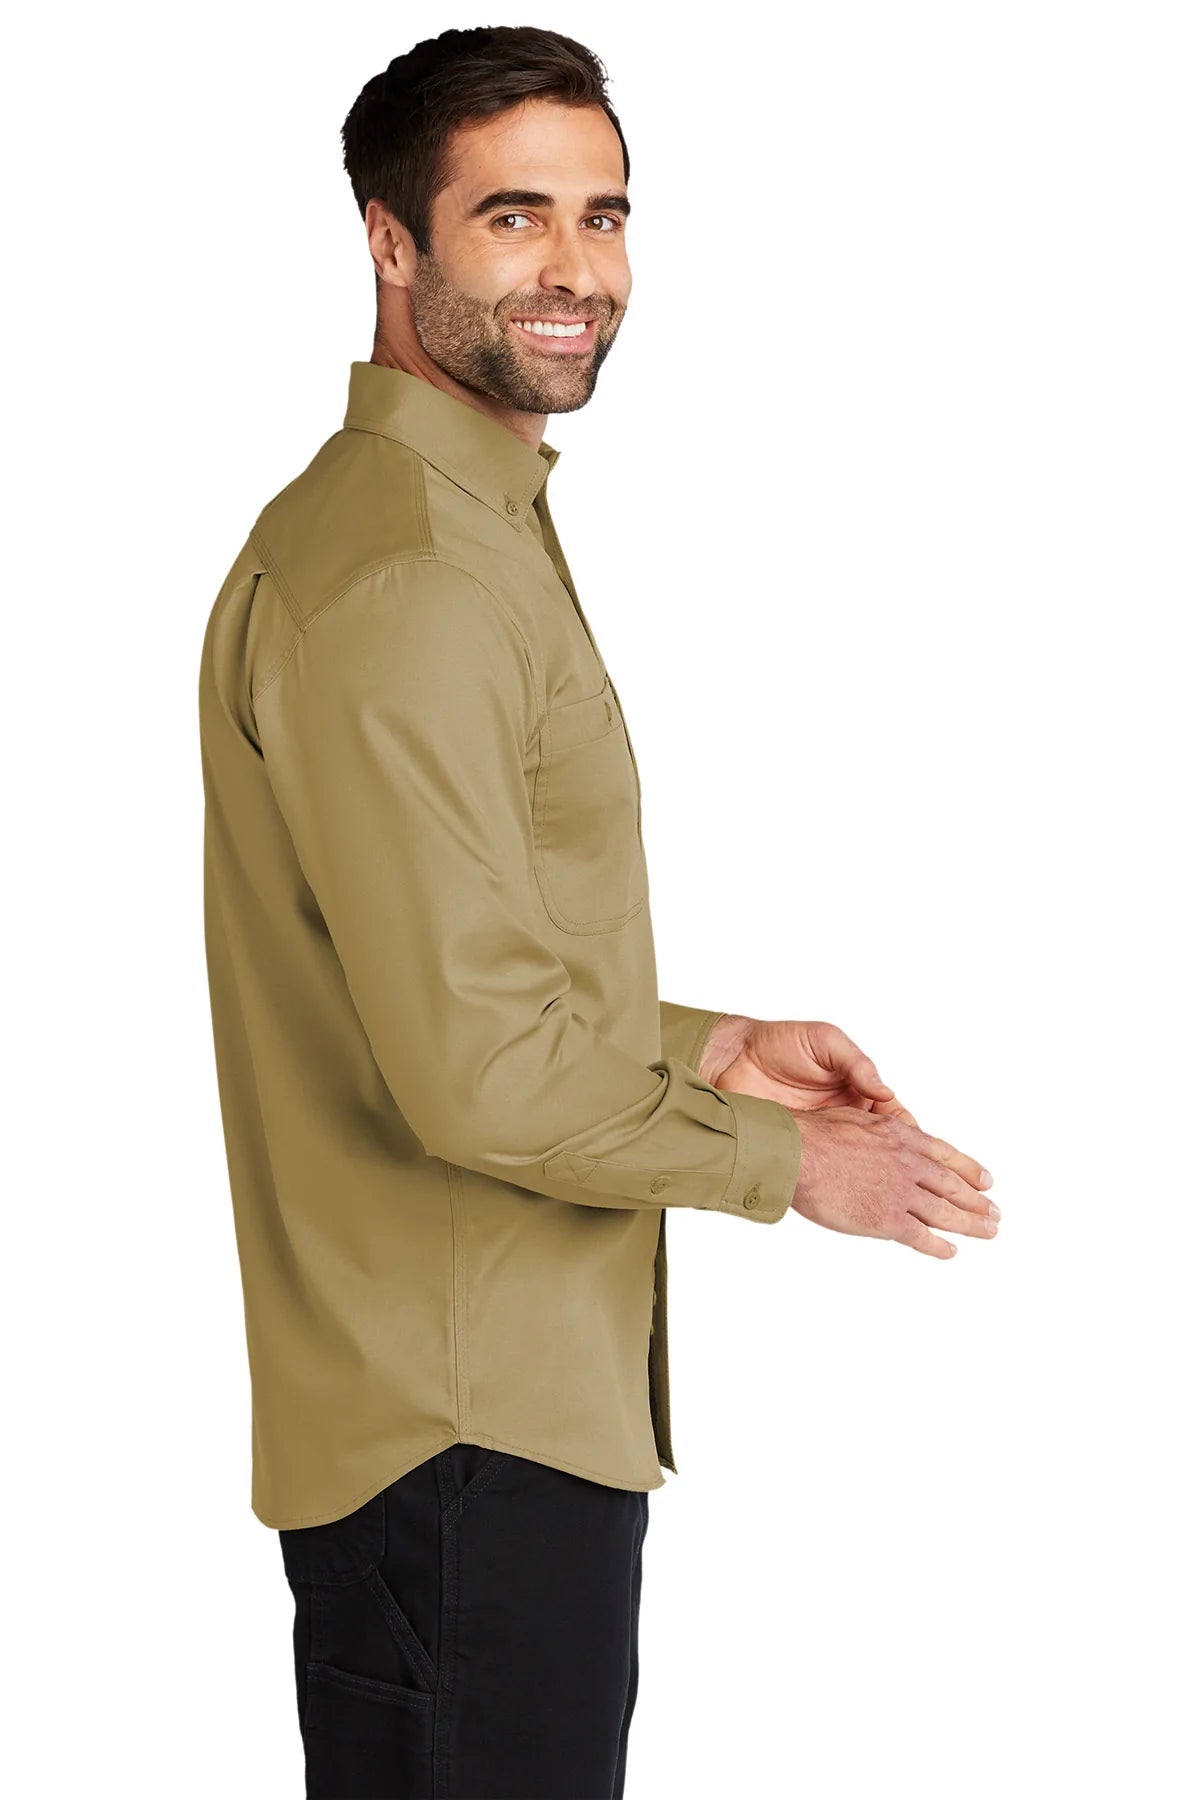 Carhartt Rugged Series Long Sleeve Custom Shirts, Dark Khaki